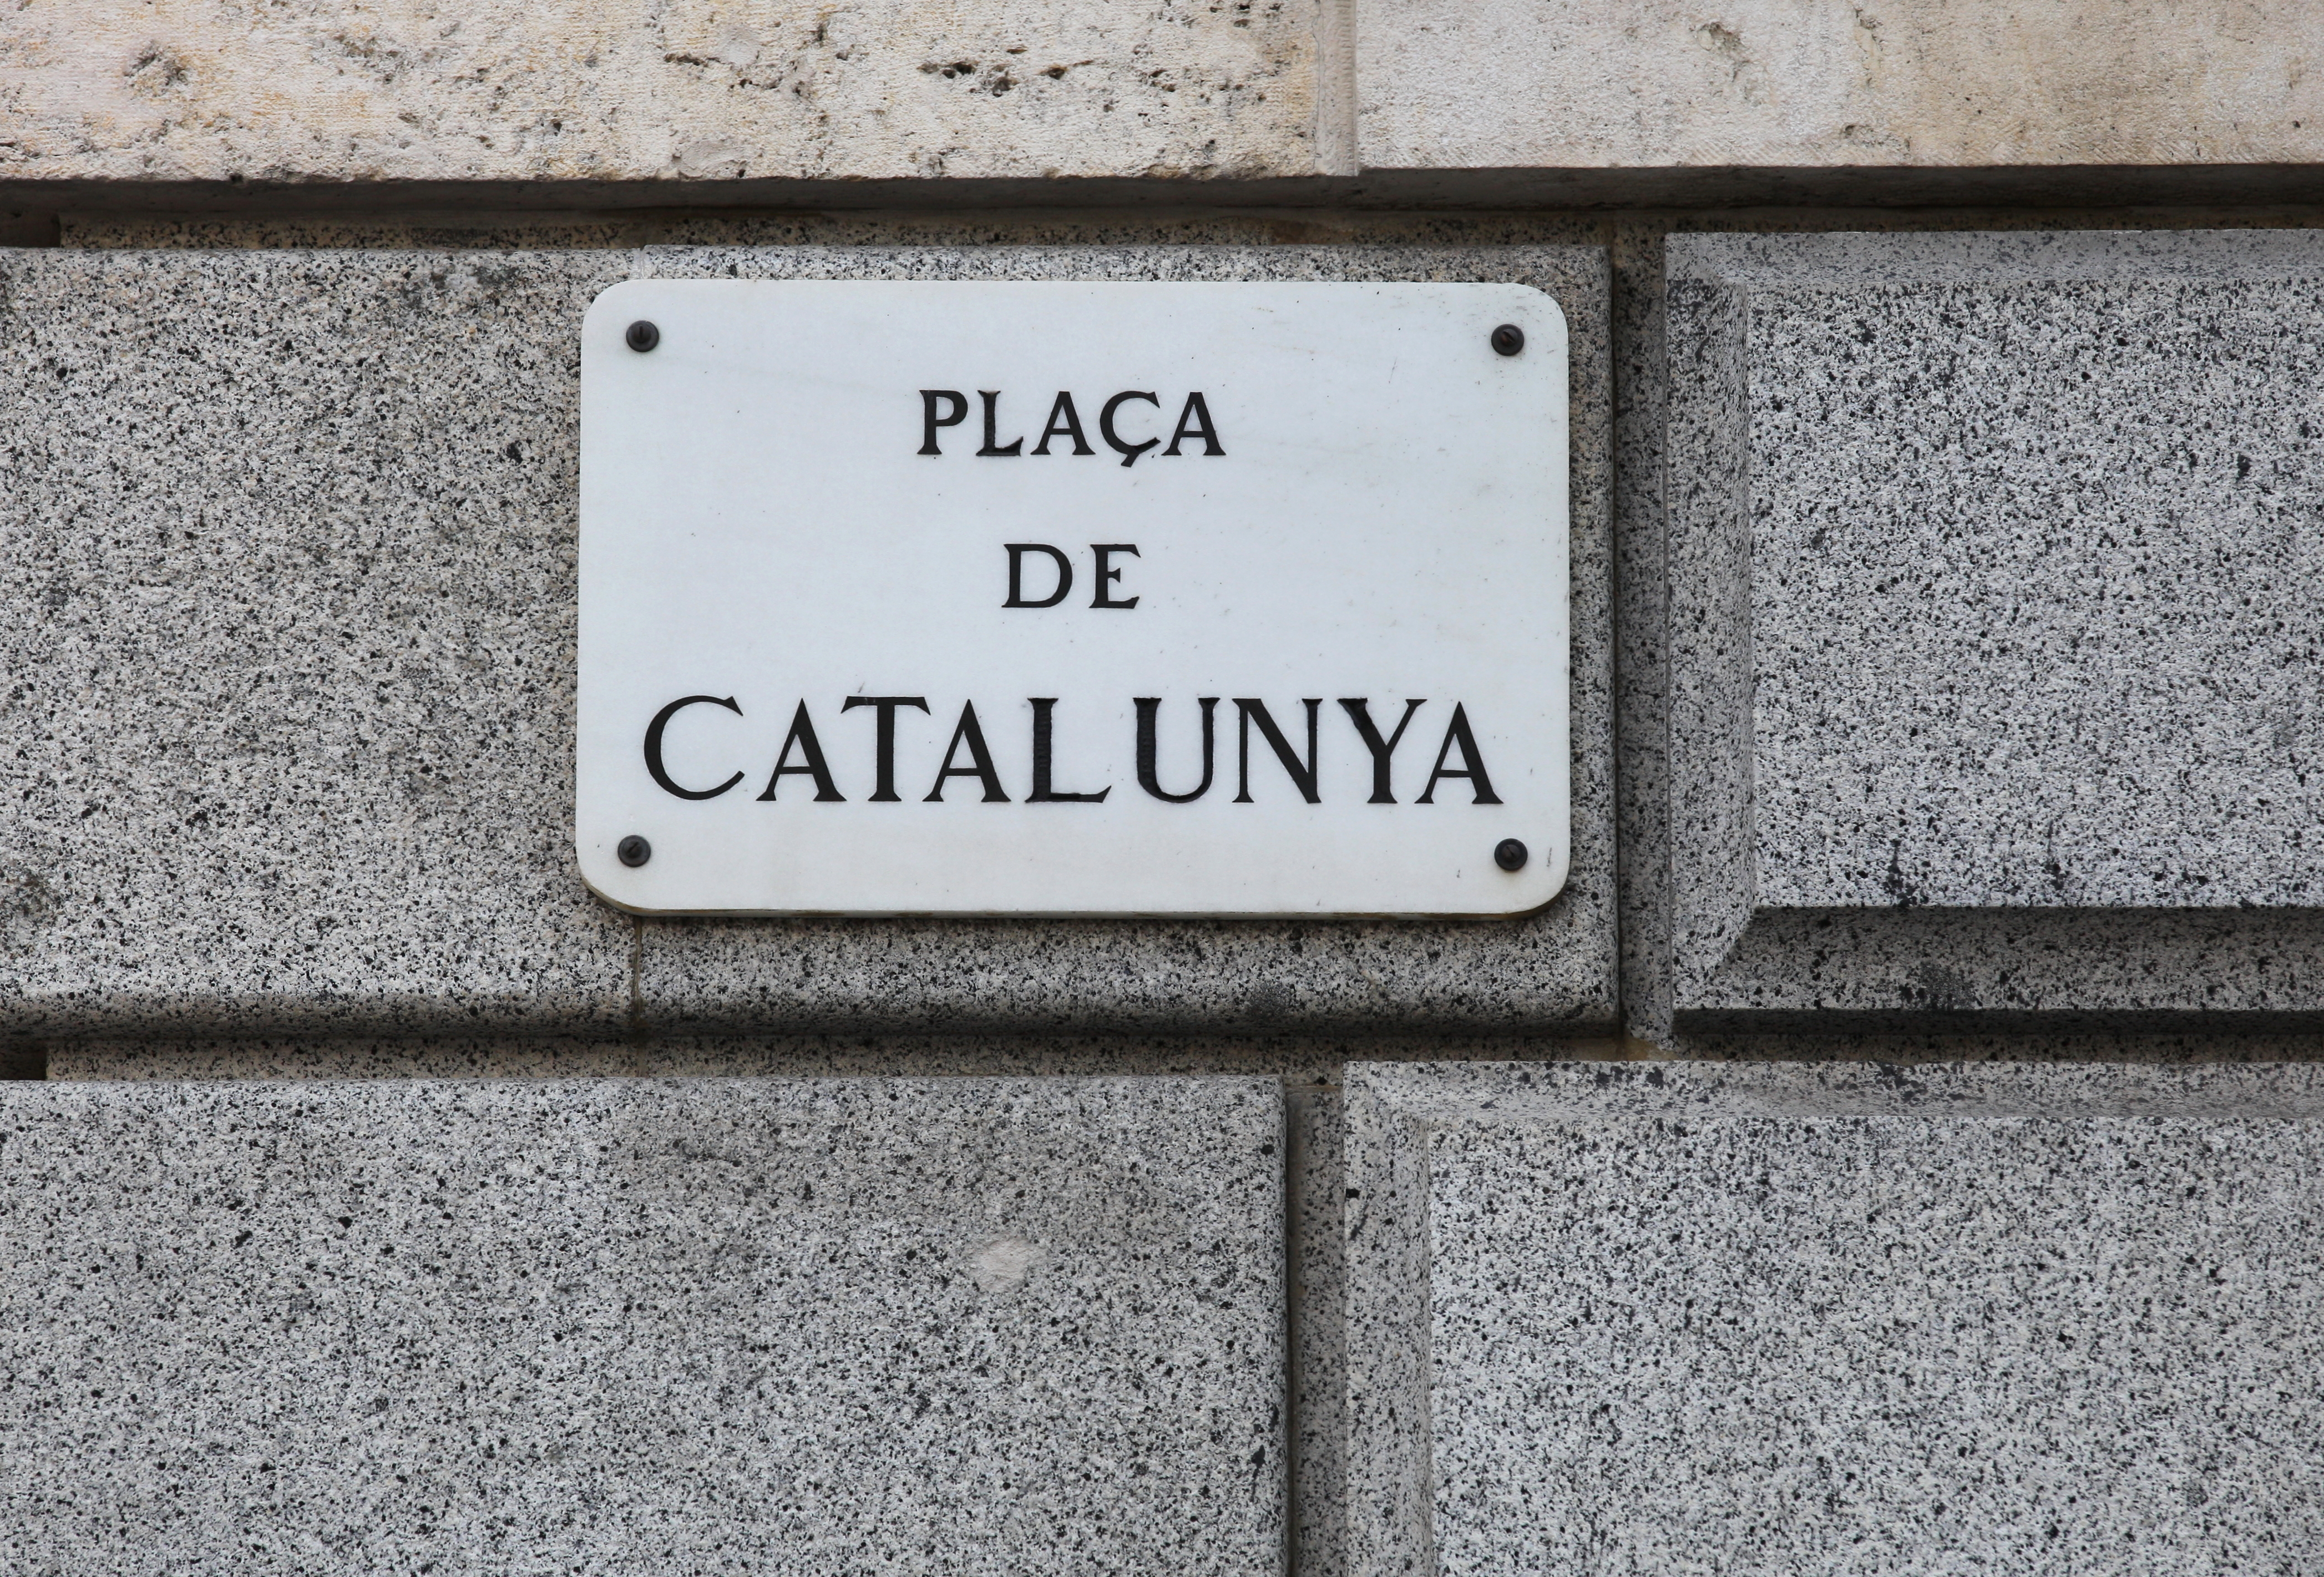 Placa de Catalunya, Barcelona, Spain, Europe, August 2013, picture 45